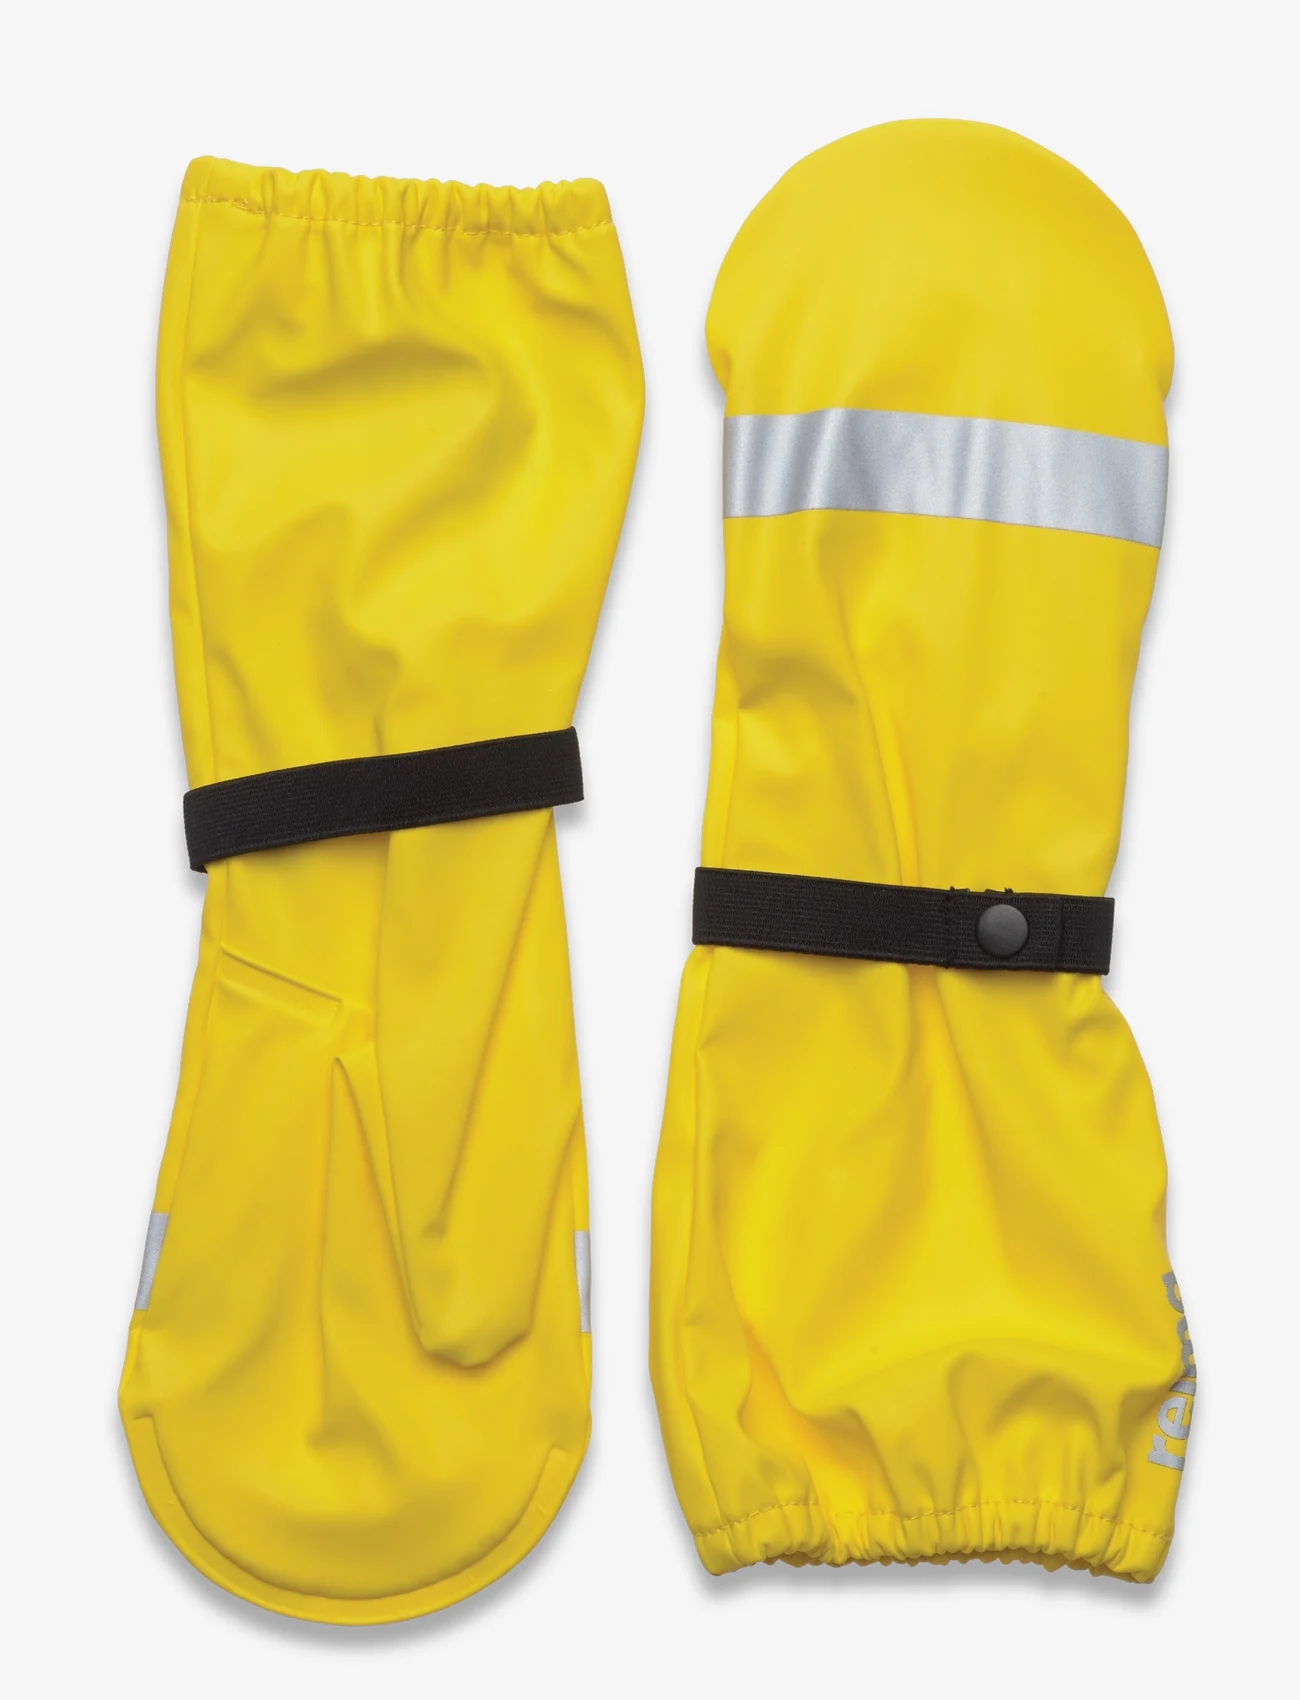 Reima - Rain mittens, Kura - rain gloves - yellow - 0